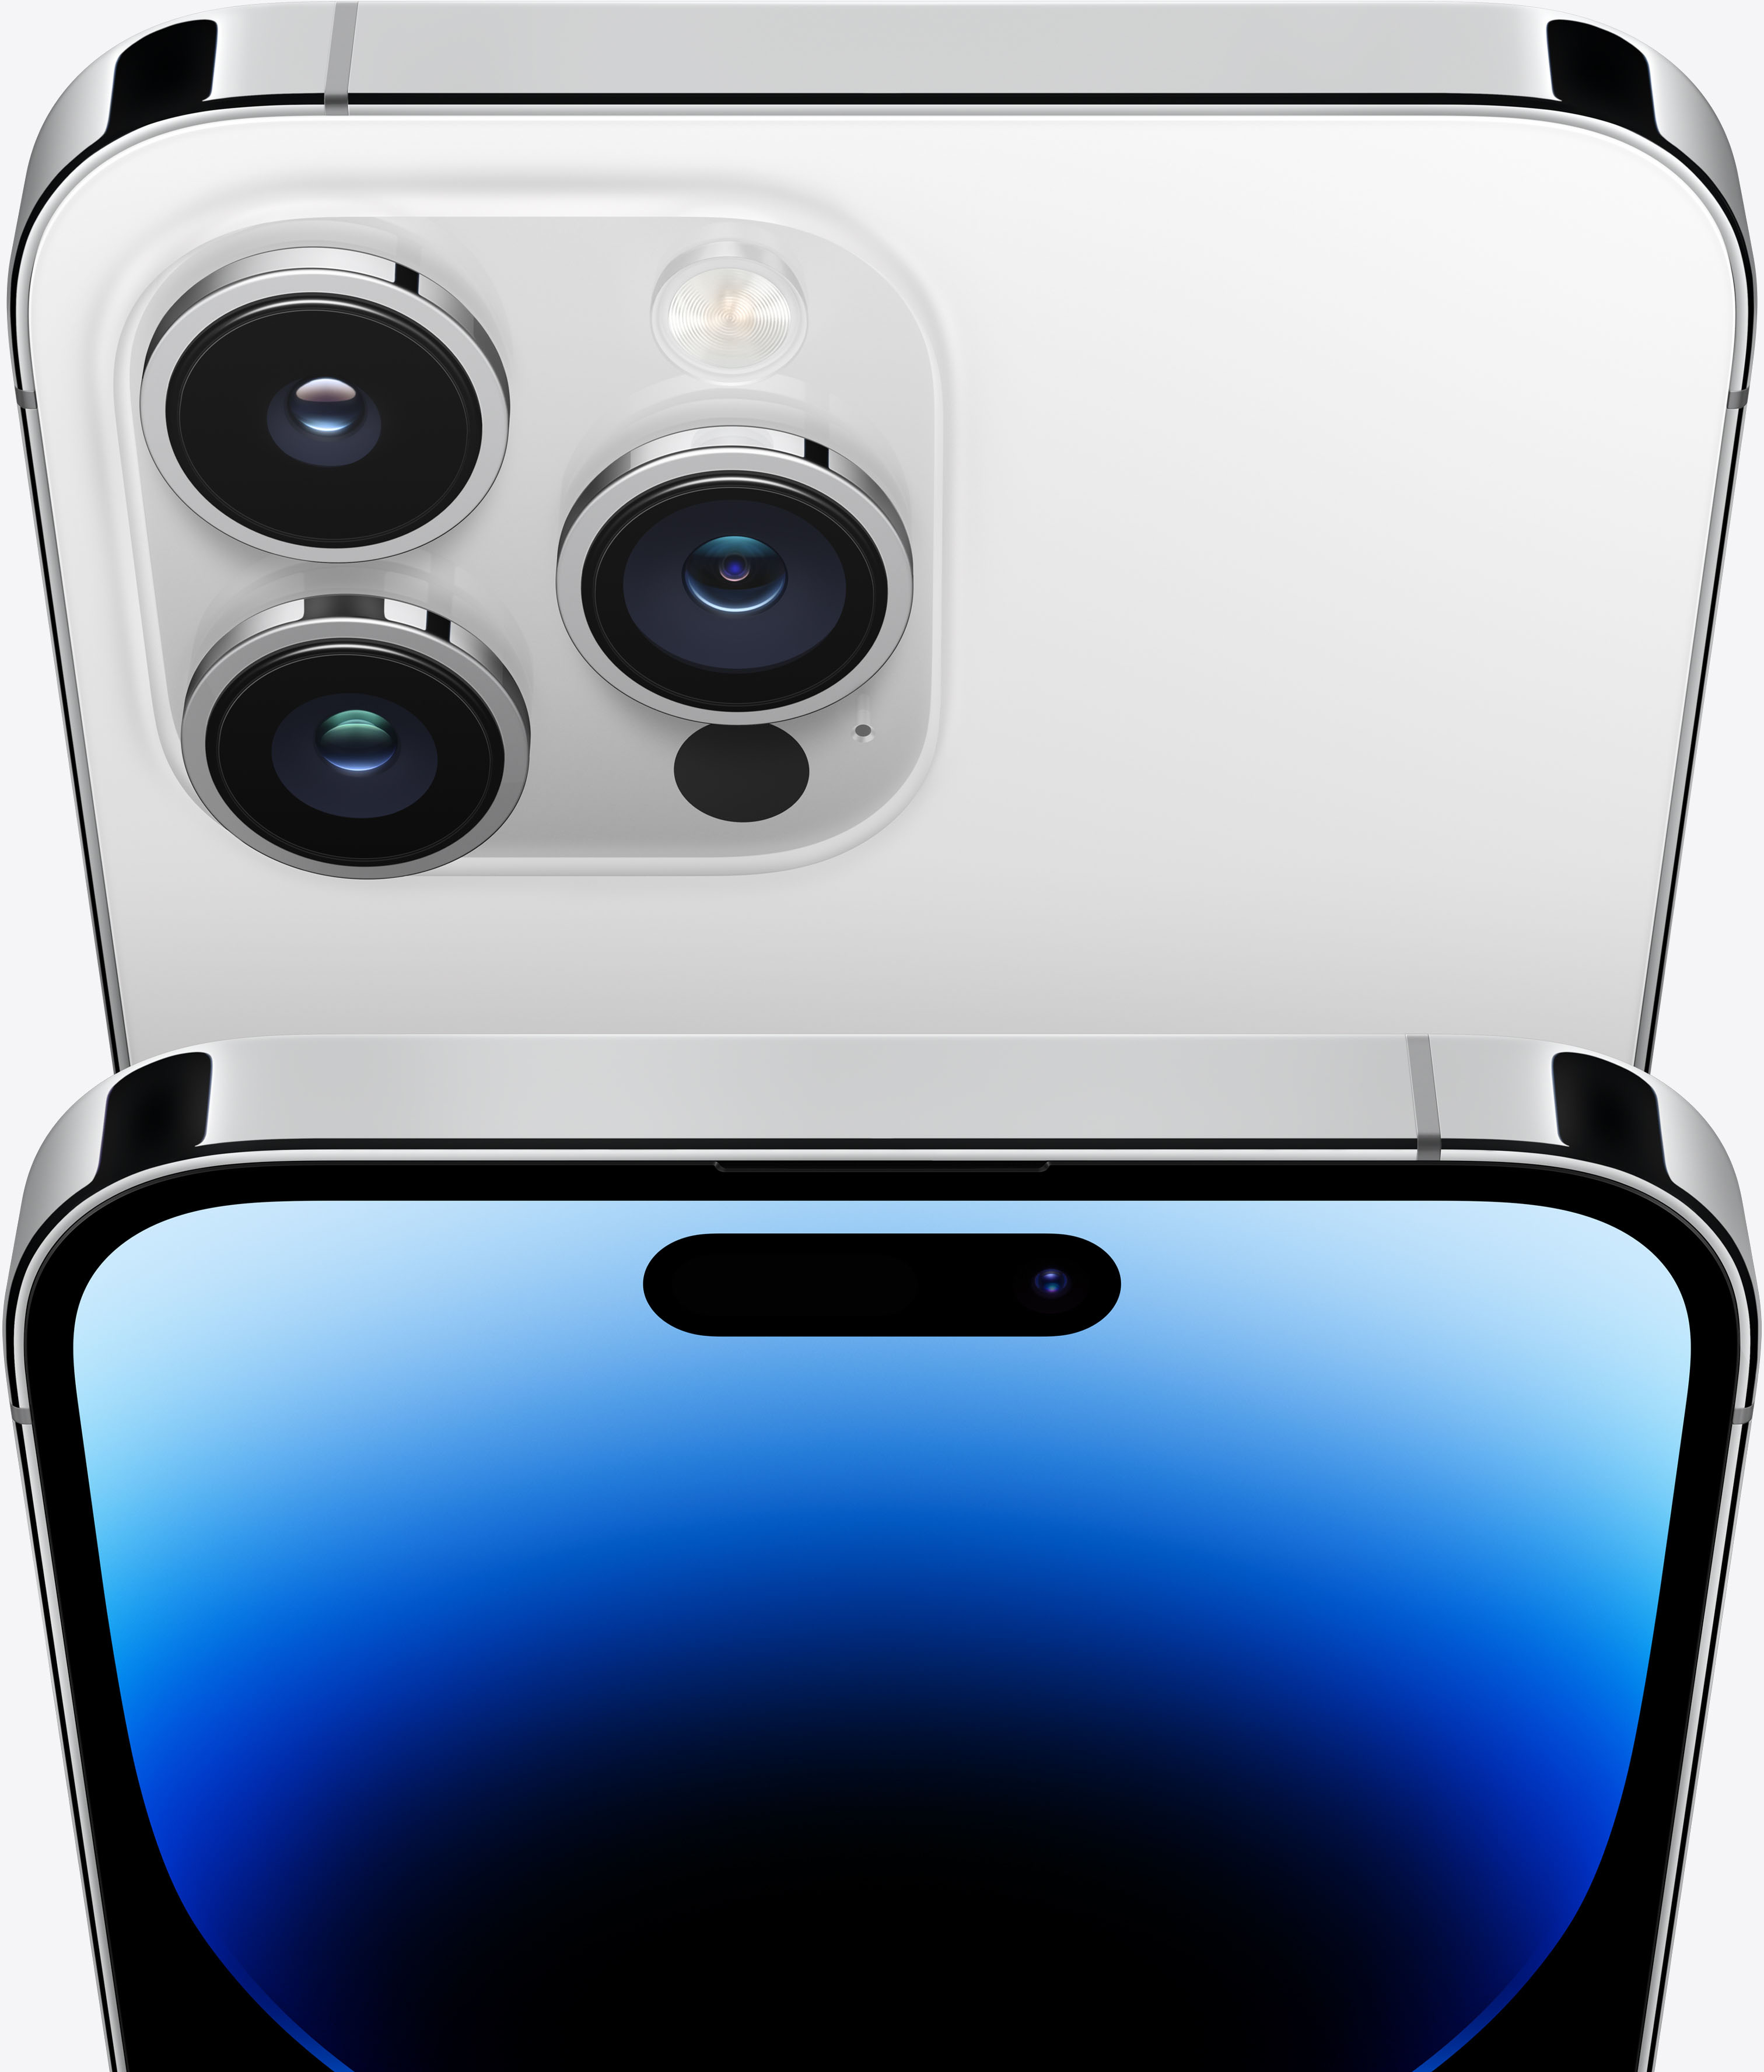 Apple iPhone 14 Pro Max 256GB Silver (Verizon) MQ8U3LL/A - Best Buy